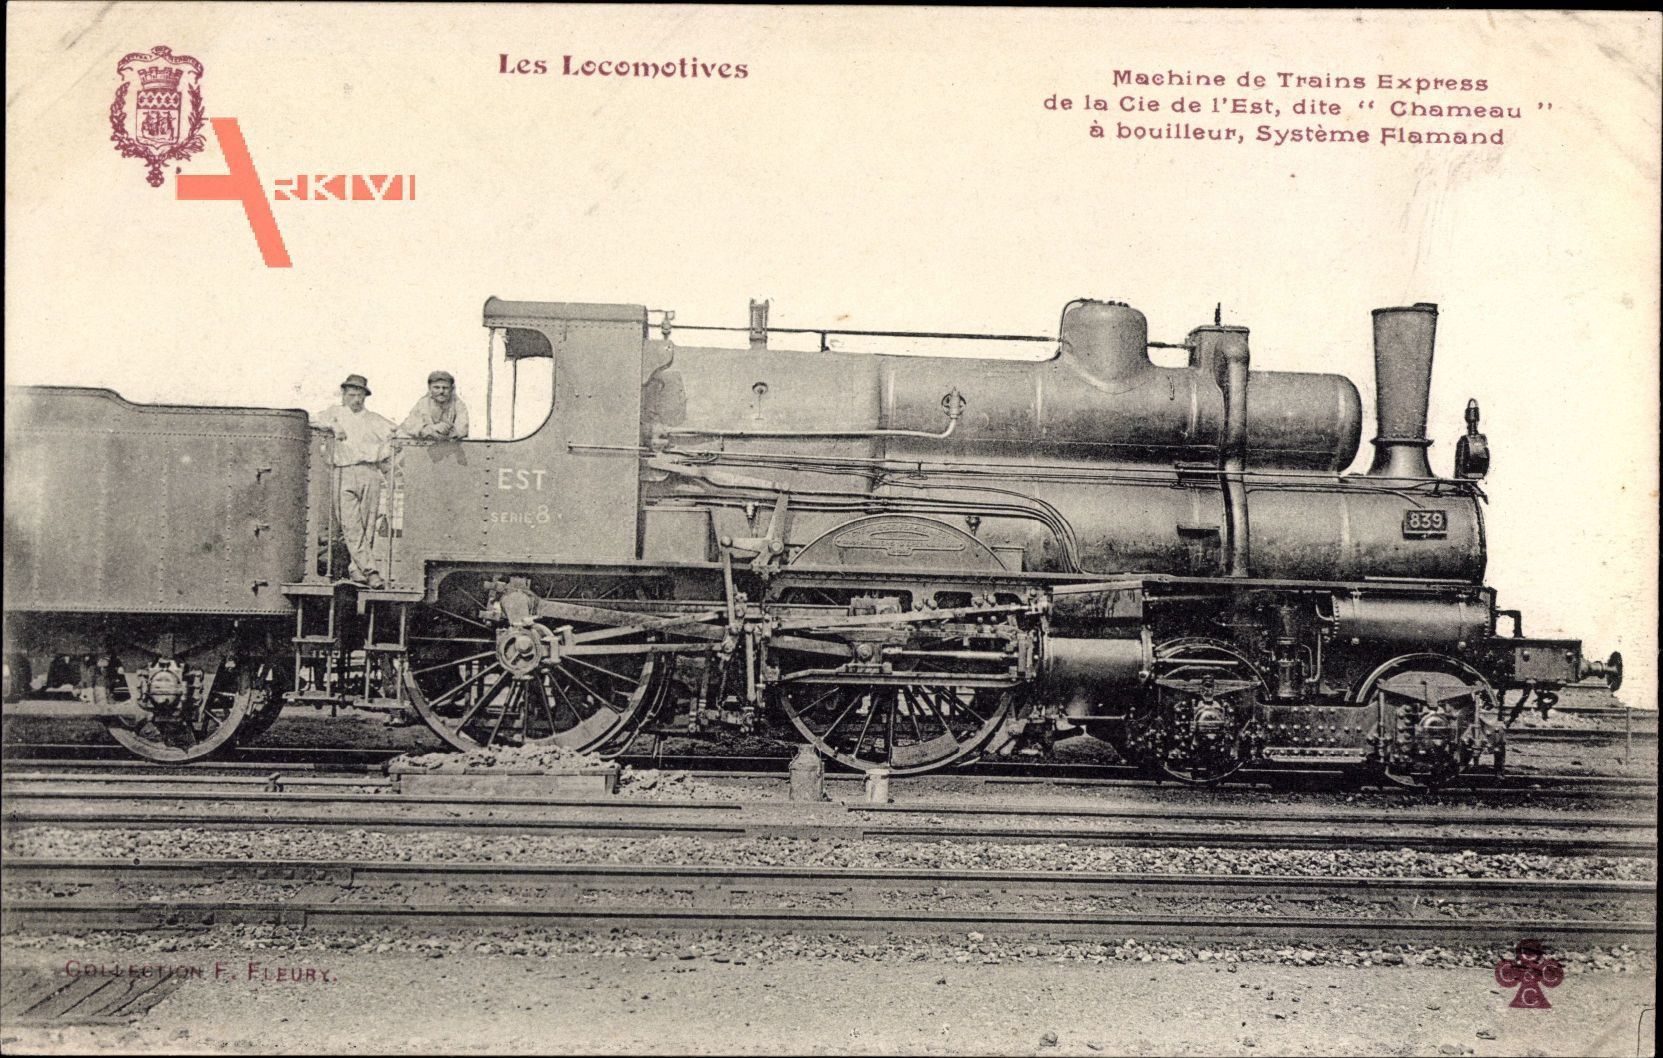 Französische Eisenbahn, Cie de lEst, Locomotive, Chameau, No. 839